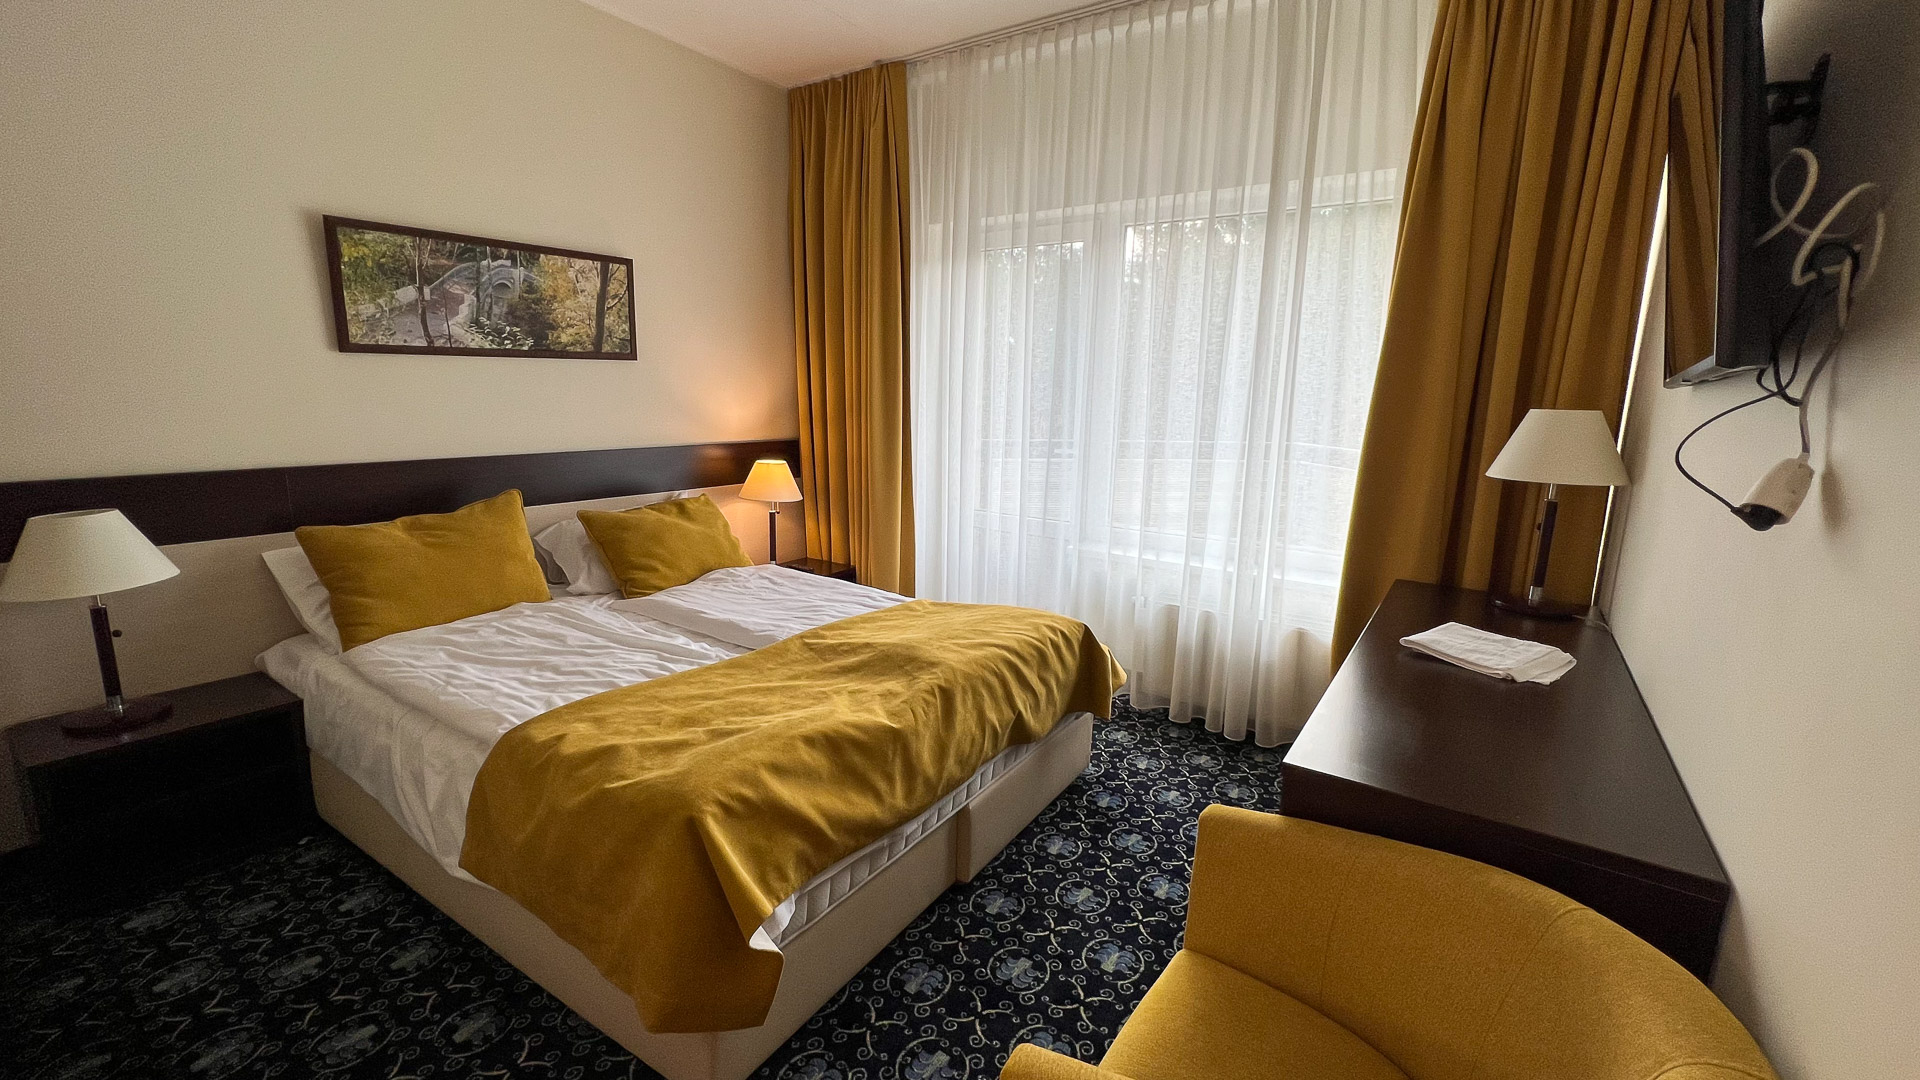 hotellrom med dobbeltseng og gule puter, sengeteppe og gardiner